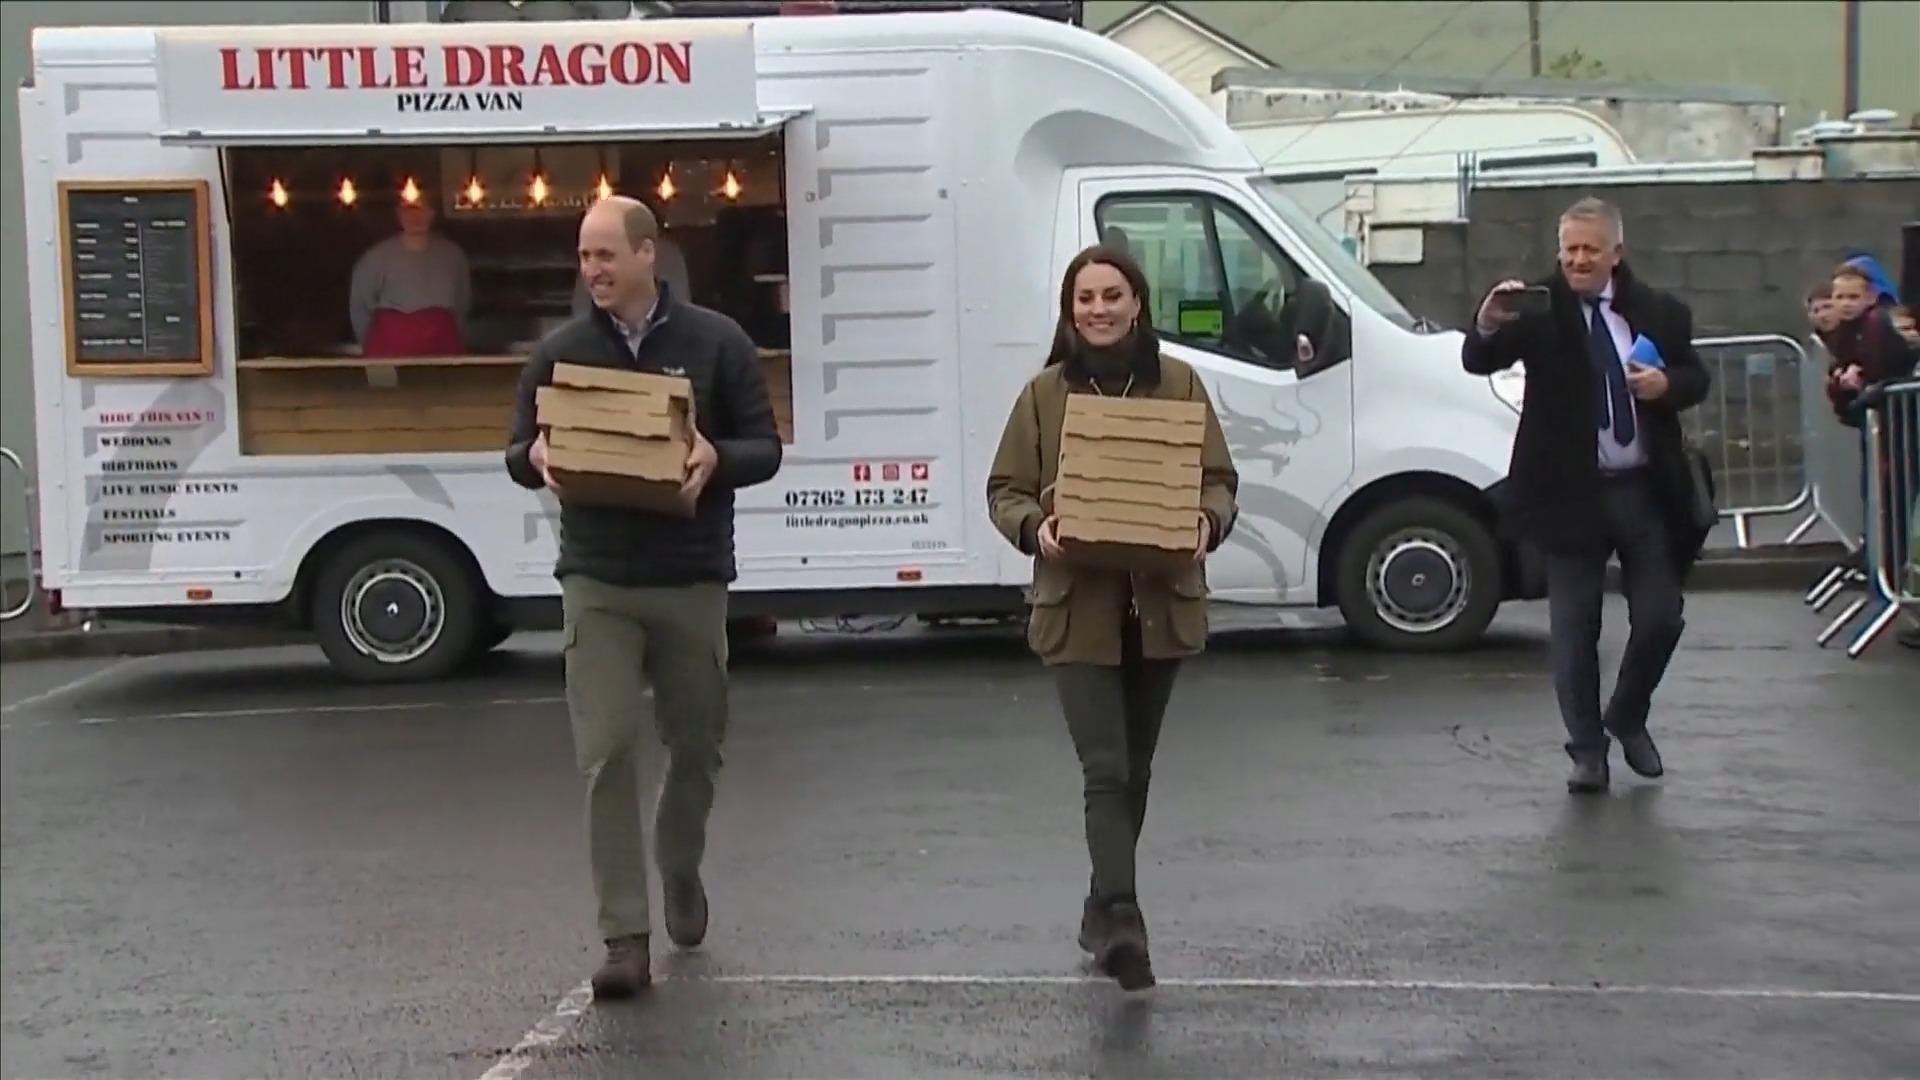 Aquí, el príncipe William y la princesa Kate sirven pizza de Spontaneous Action